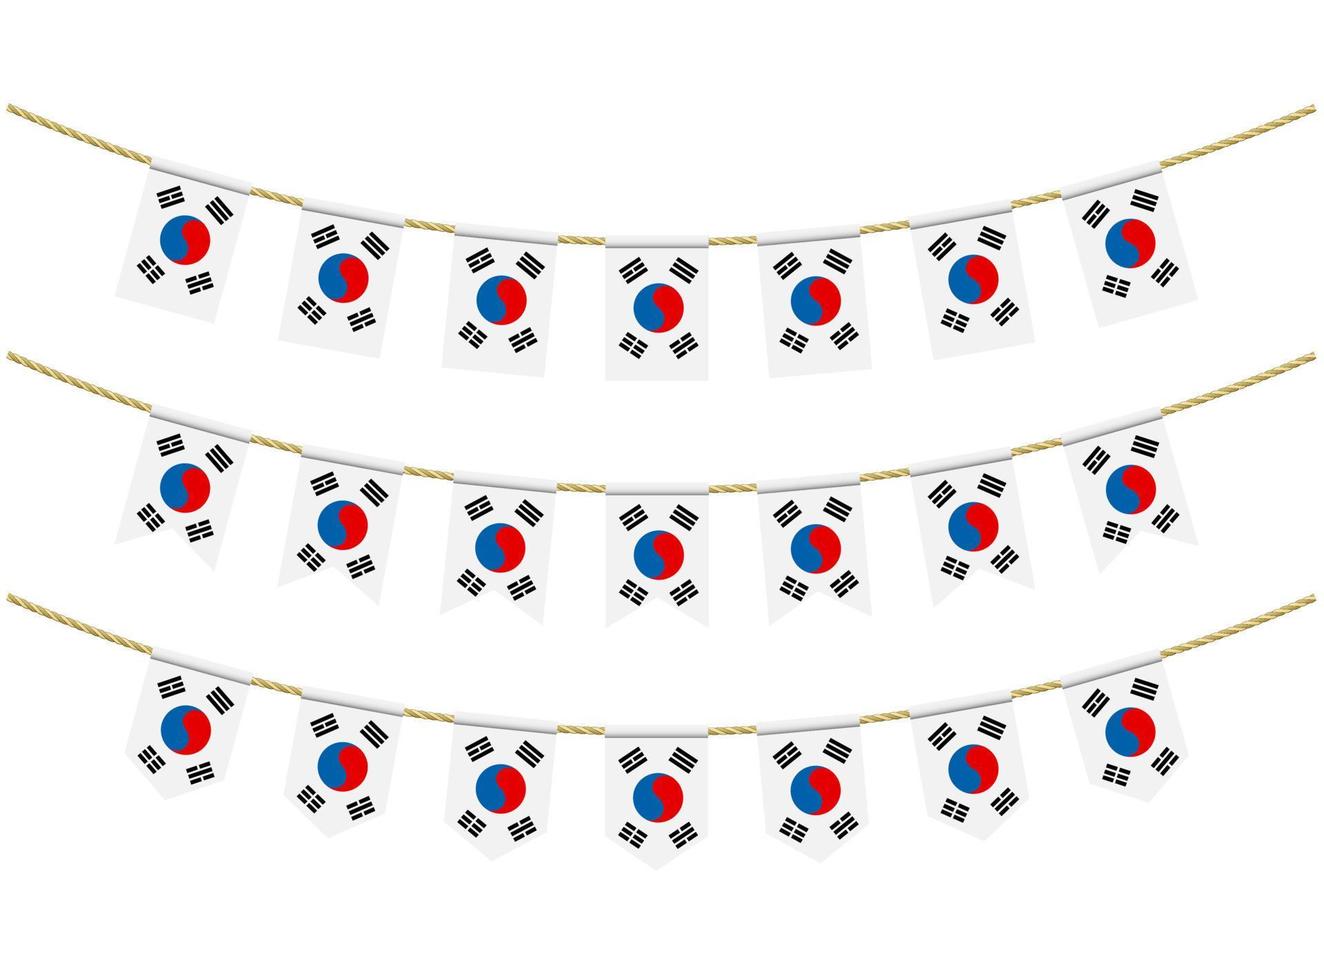 bandera de corea del sur en las cuerdas sobre fondo blanco. conjunto de banderas patrióticas del empavesado. decoración del empavesado de la bandera de corea del sur vector